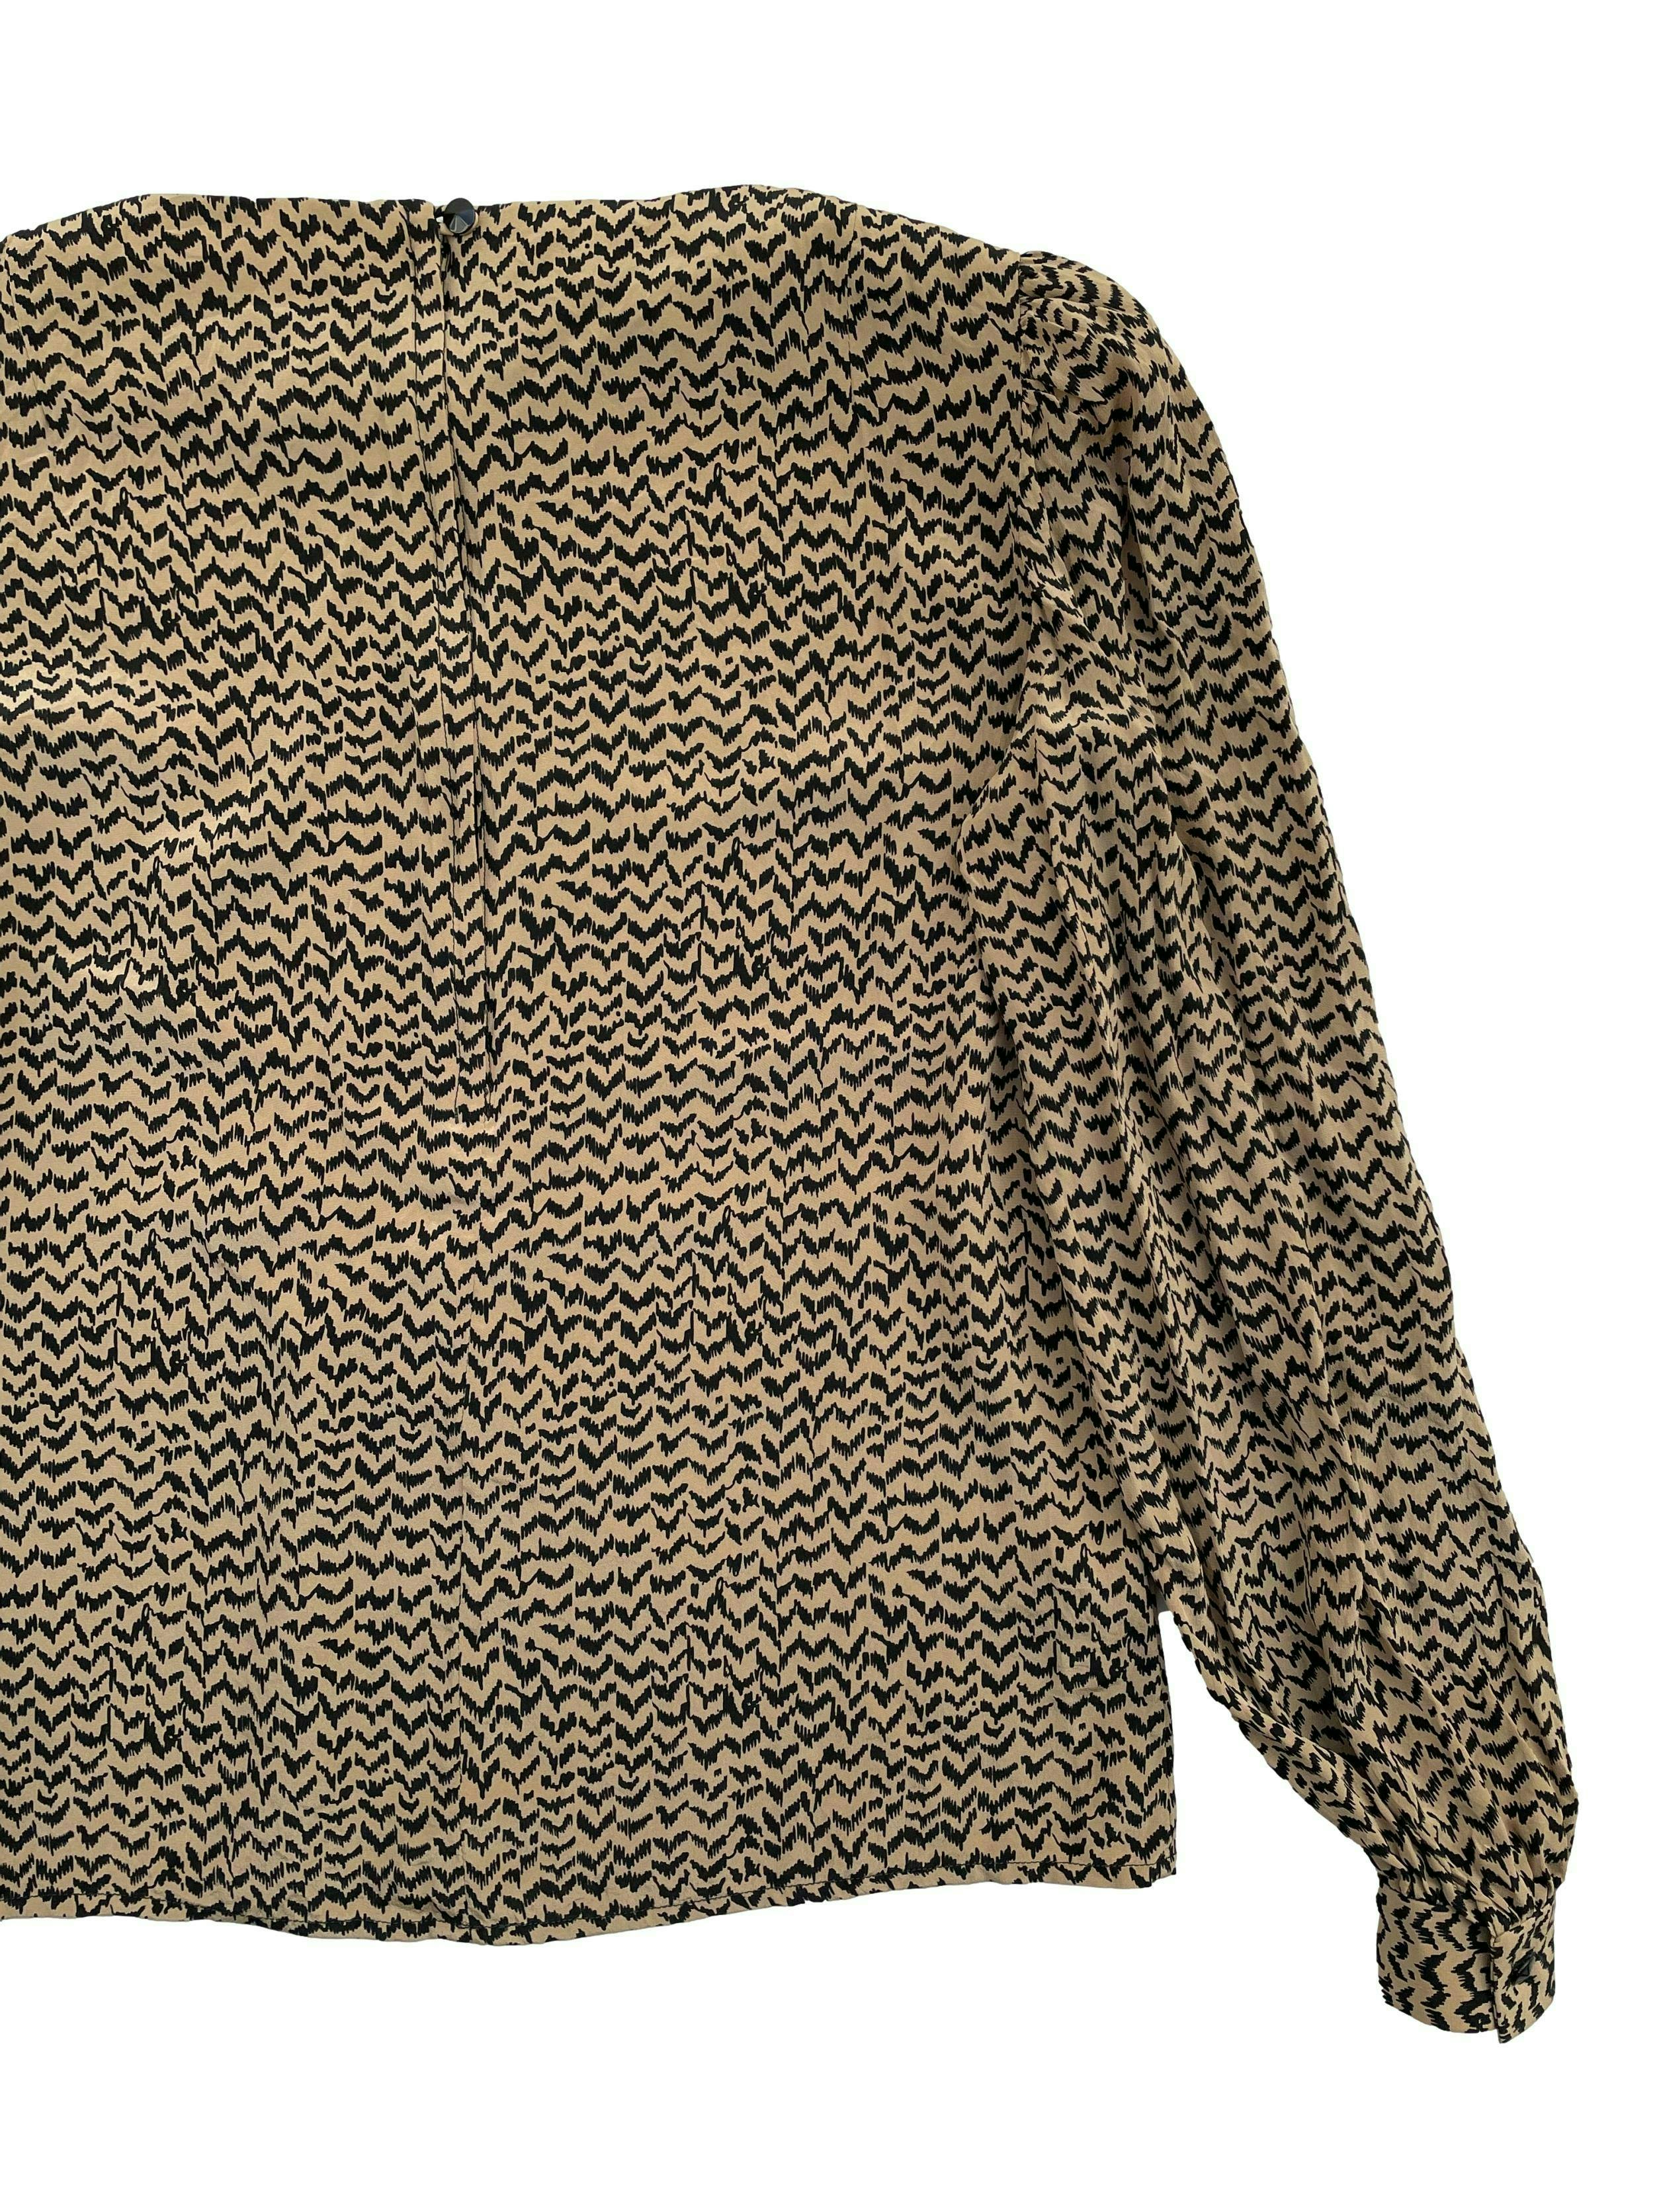 Blusa vintage 100% seda camel con trazos negros, pliegues en hombros, cierre y botón en espalda. Busto 96cm Largo 54cm